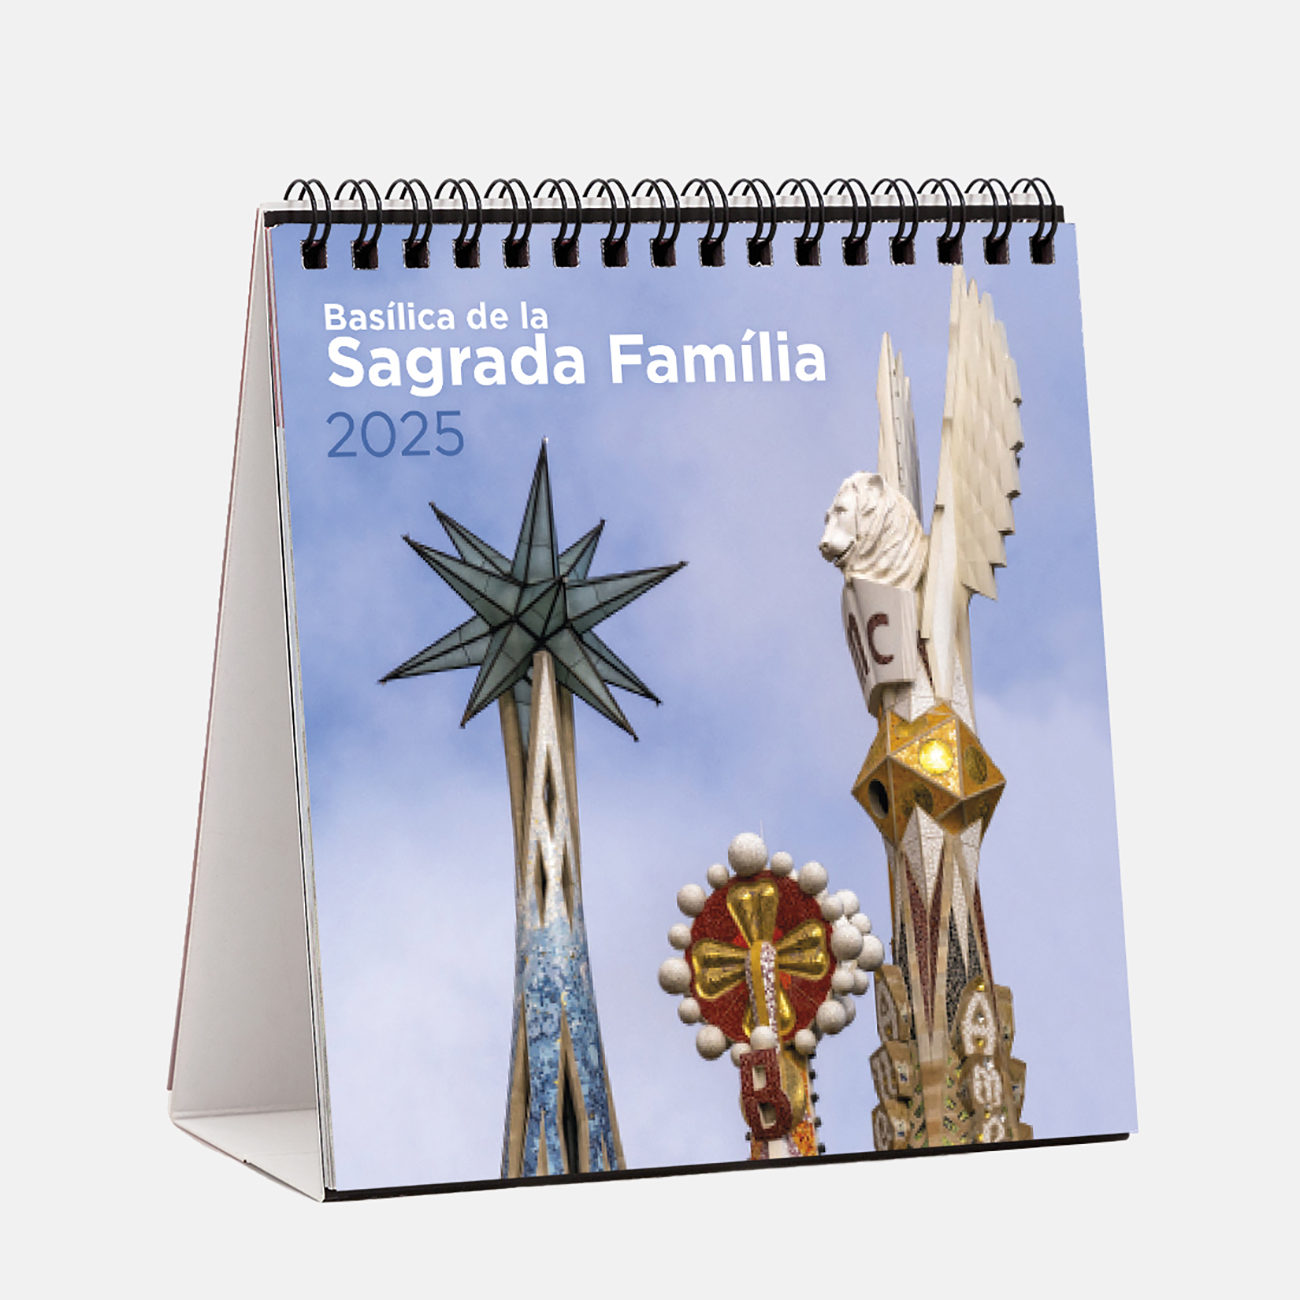 Calendari 2025 Basílica de la Sagrada Família s25sf calendario sobremesa 2025 sagrada familia